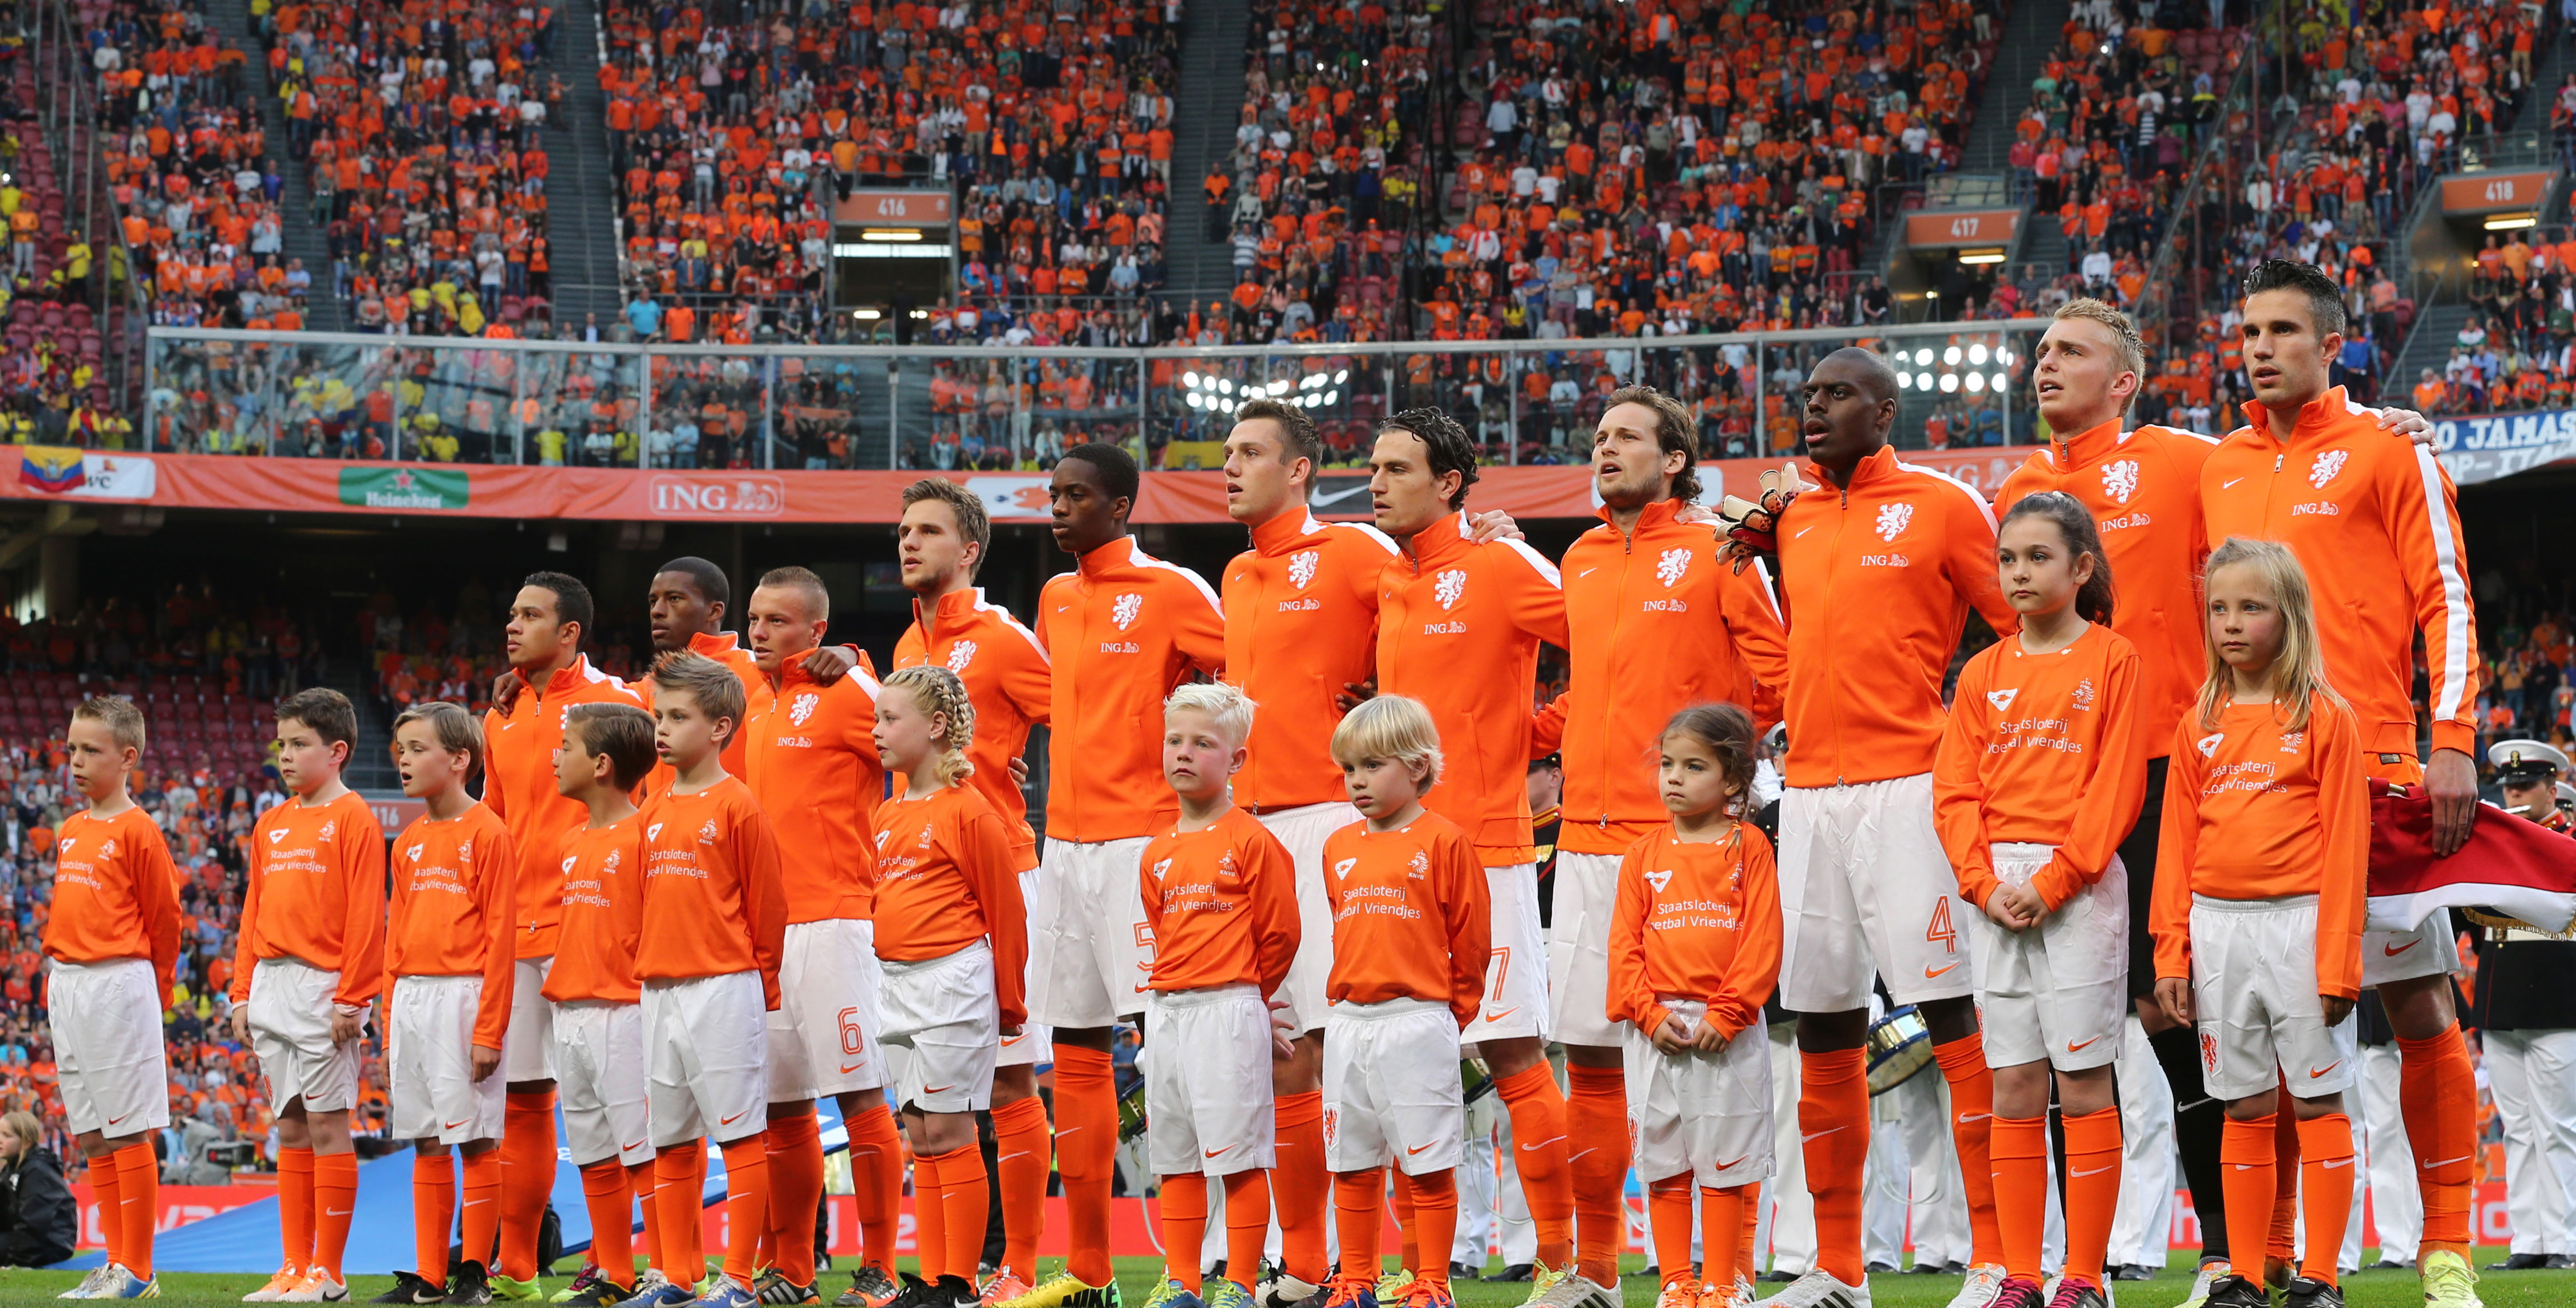 De basiself van Oranje van rechts naar links: Van Persie, Cillessen, Martins Indi, Blind, Janmaat, De Vrij, Kongolo, Veltman, Clasie, Wijnaldum en Depay.